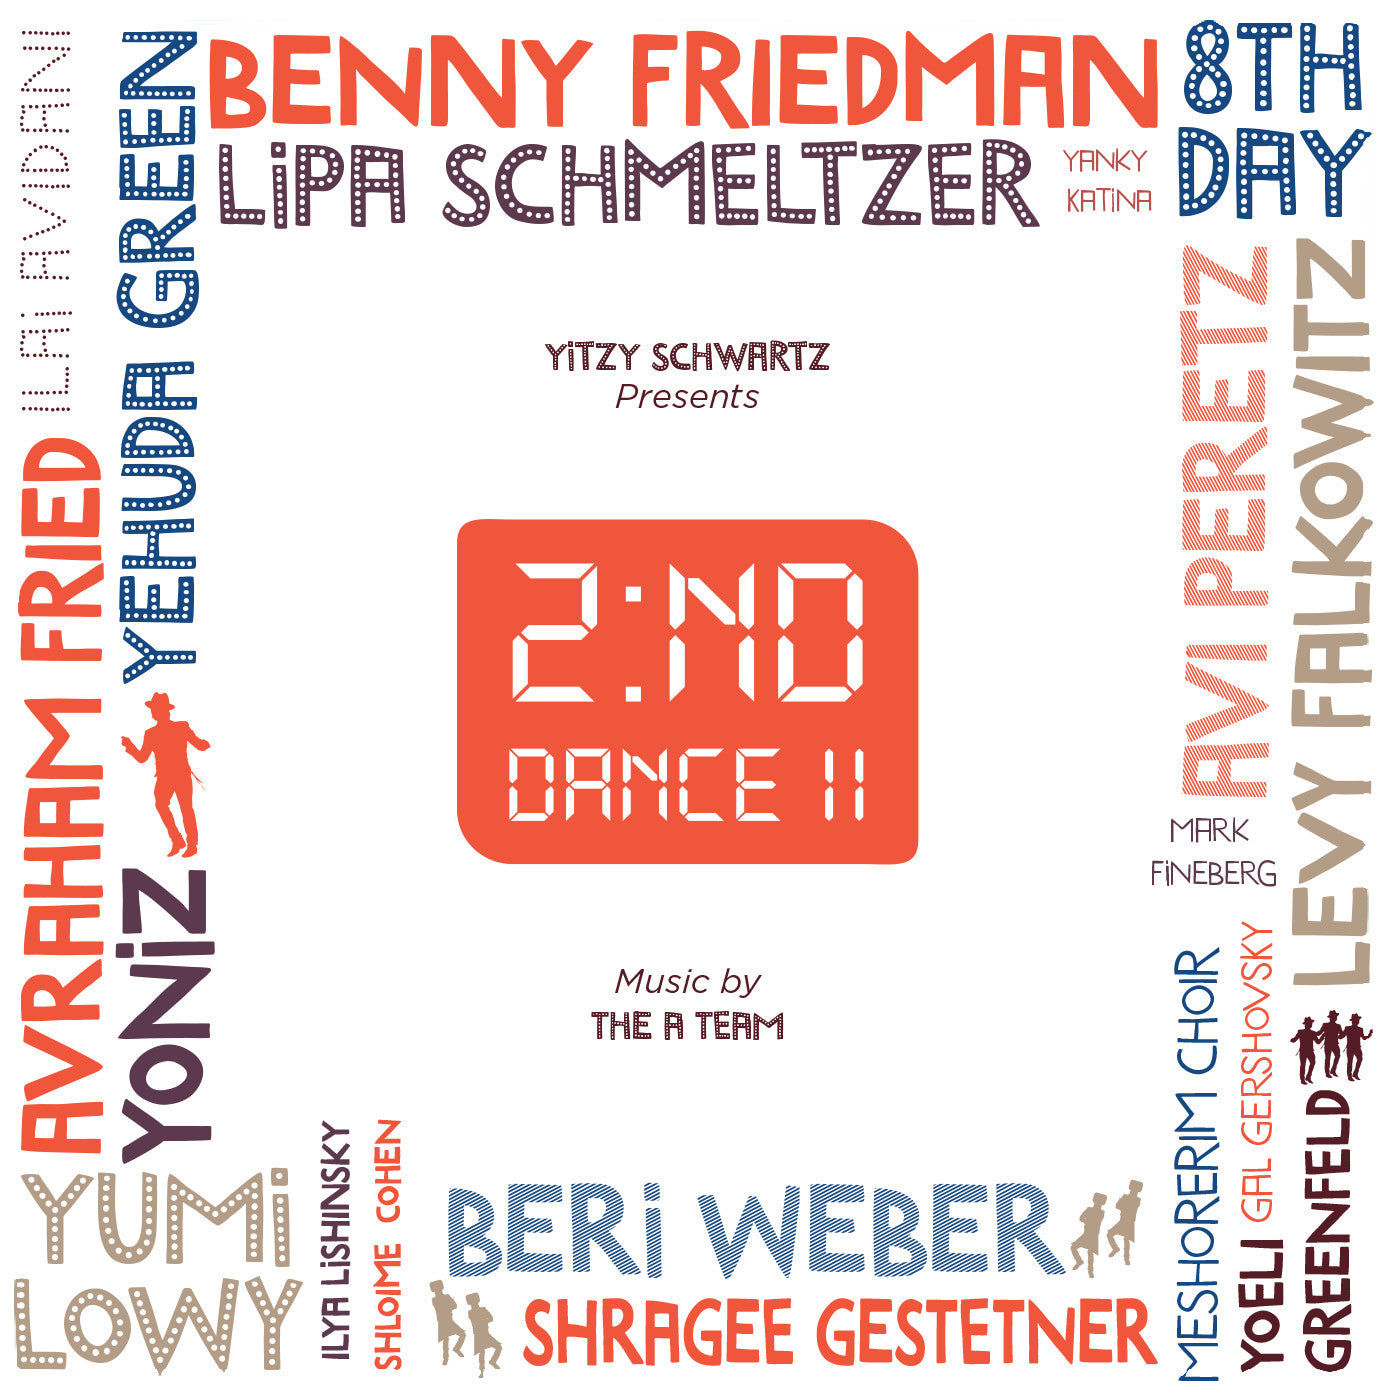 Yitzy Schwartz - Second Dance II